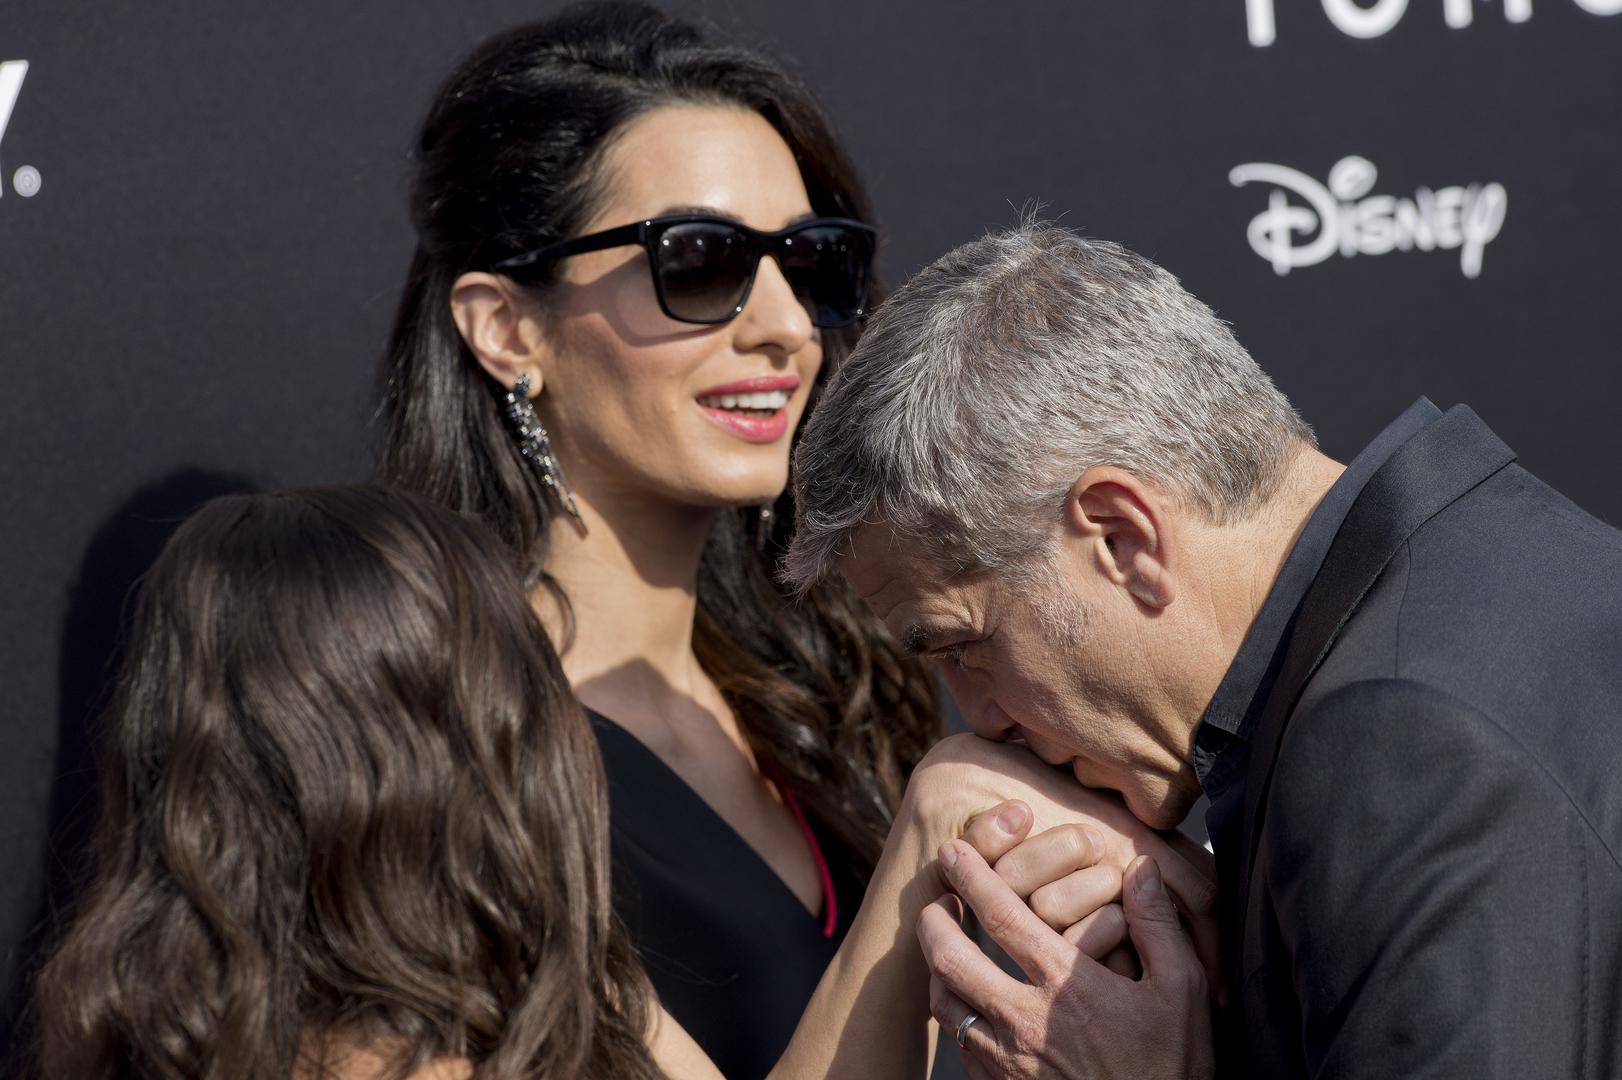 Glumac, redatelj, scenarist i producent sve do prije četiri  godine bio je najpoznatiji neženja na svijetu, a sada je u sretnom braku s odvjetnicom Amal Clooney s kojom ima blizance. Do Amal je tvrdio kako se više nikada neće ženiti i kako mu je jedan brak i to onaj s glumicom Talijom Balsam bio dovoljan. 